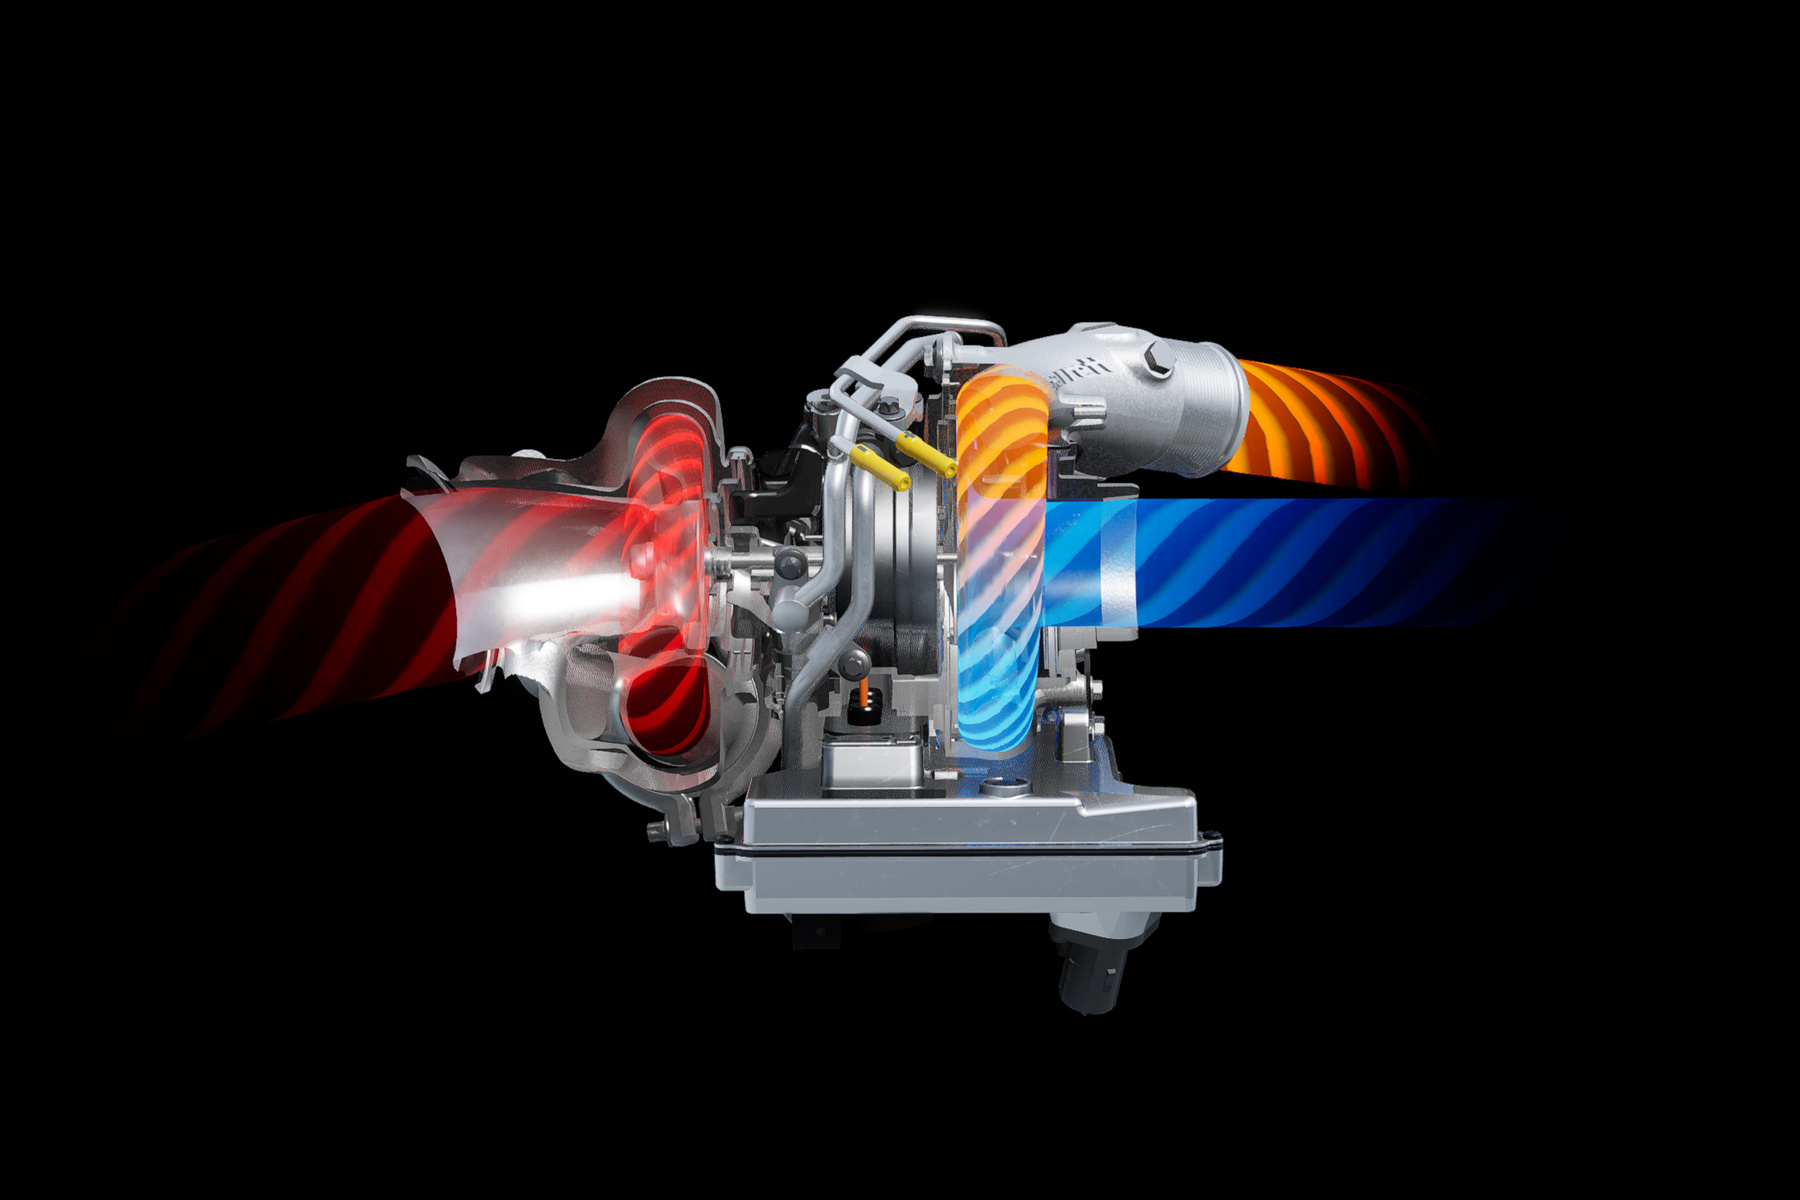 Az AMG One 1,6 literes V6-osának teljesítményét 574 lóerőre fújja fel az elektromos turbója, de a turbóba épített elektromotor is combos. Teljesítménye 122 LE